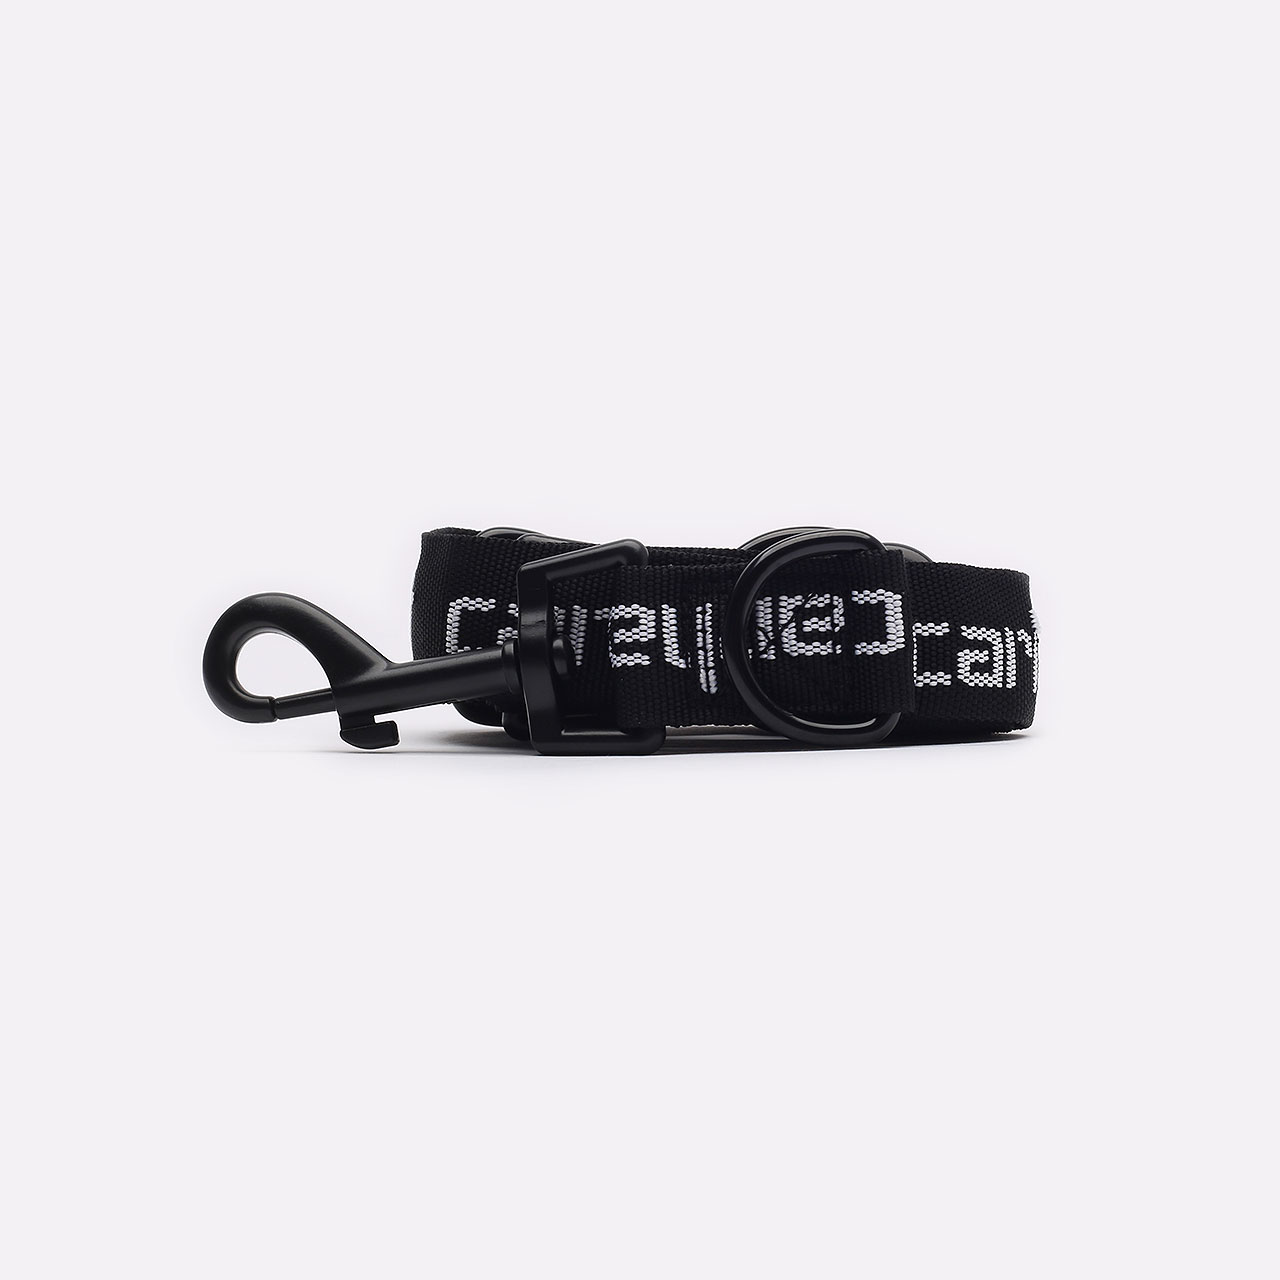  черный ошейник, поводок Carhartt WIP Script Dog Leash&Collar I030251-black/white - цена, описание, фото 2